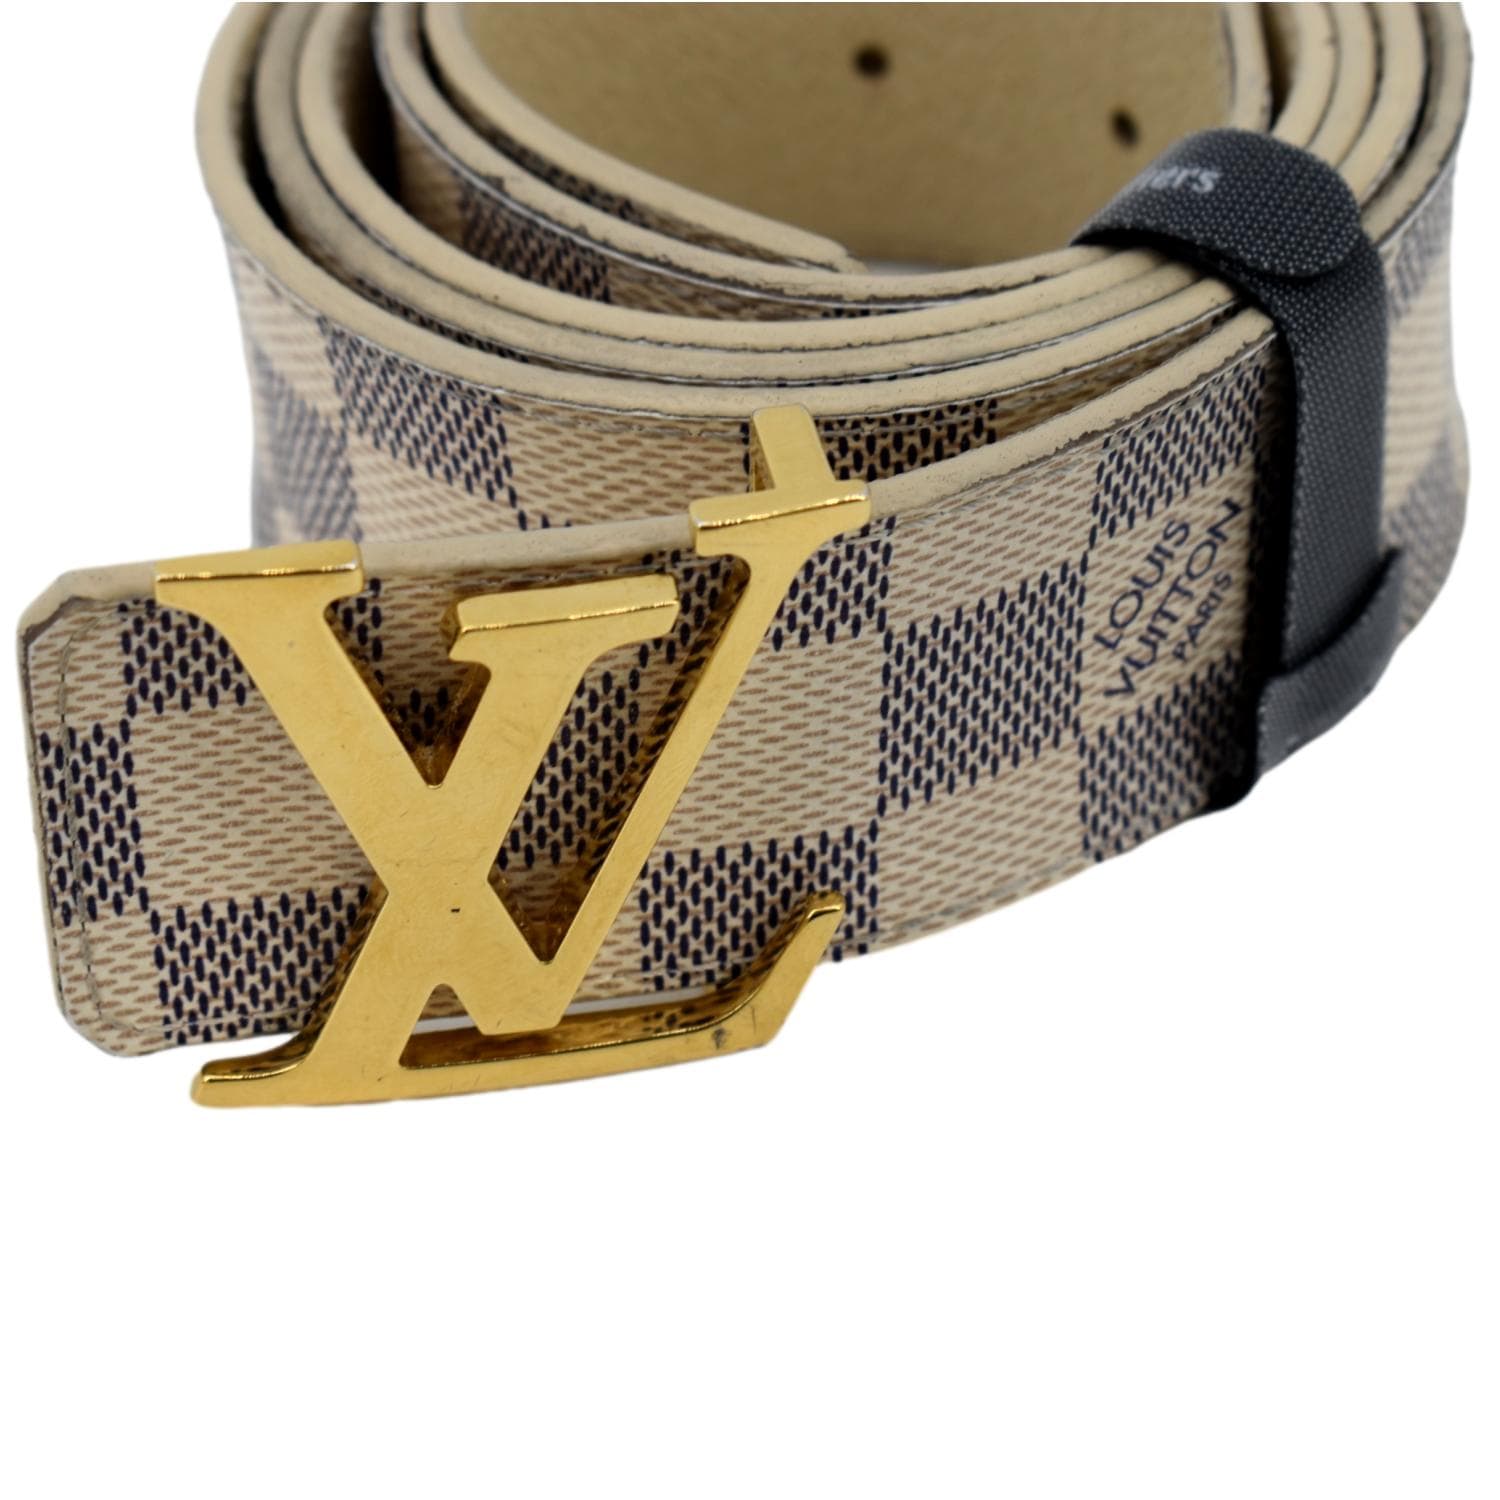 Pre-Owned & Vintage LOUIS VUITTON Belts for Men